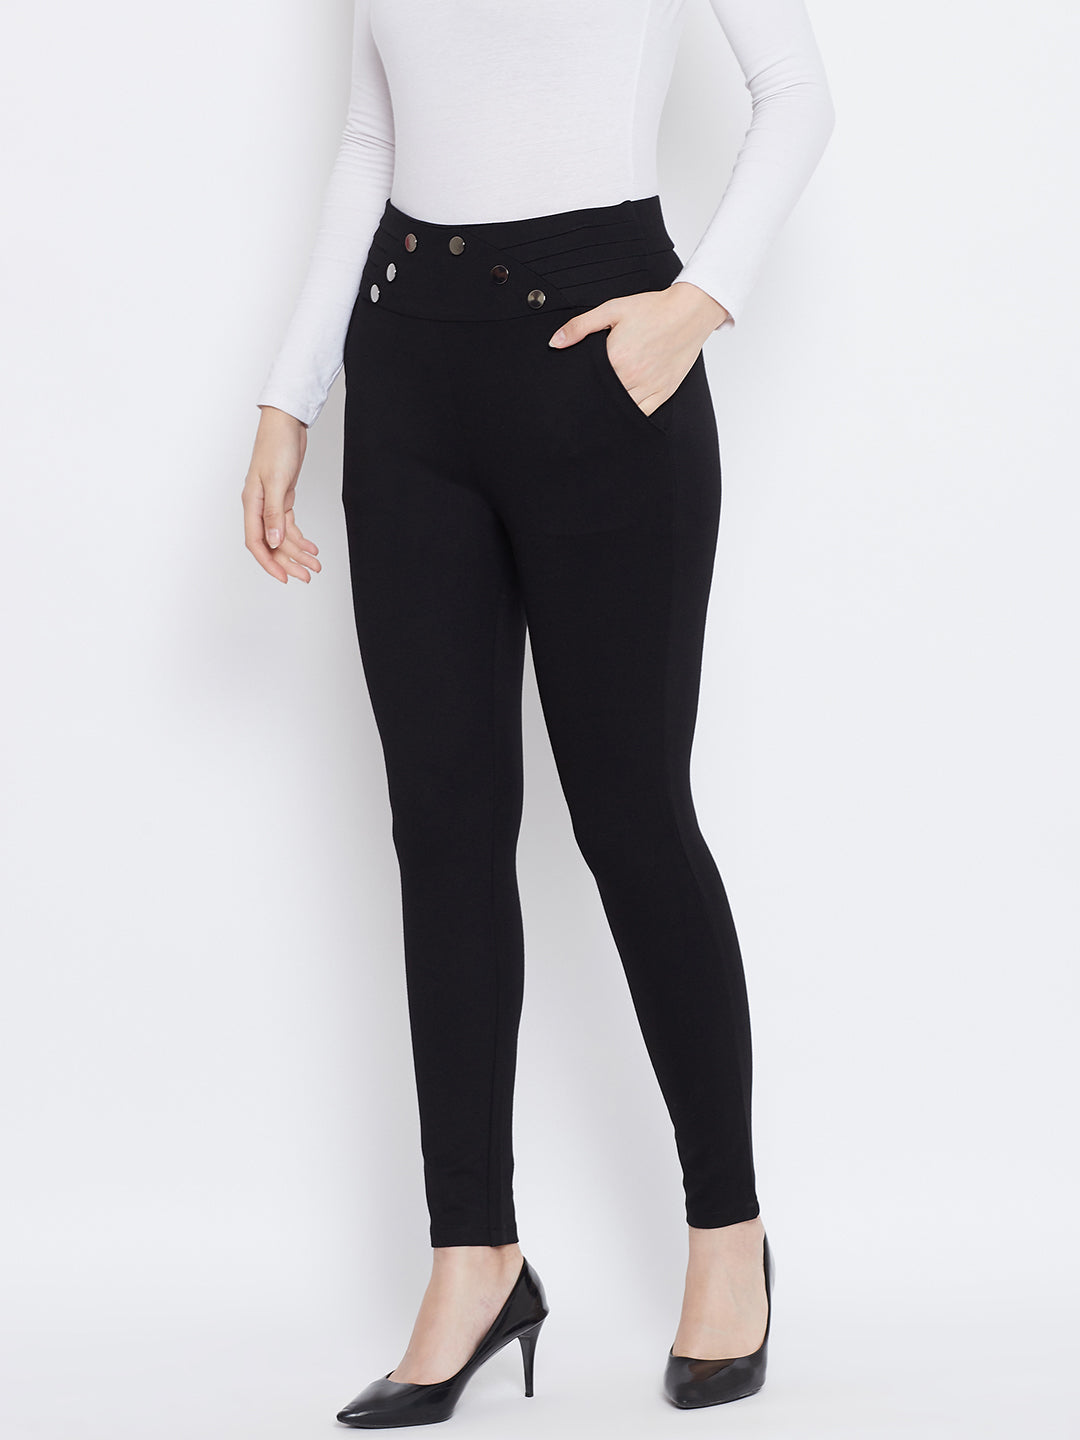 Wahe-NOOR Women's Black Solid Skinny Fit Jeggings - Distacart